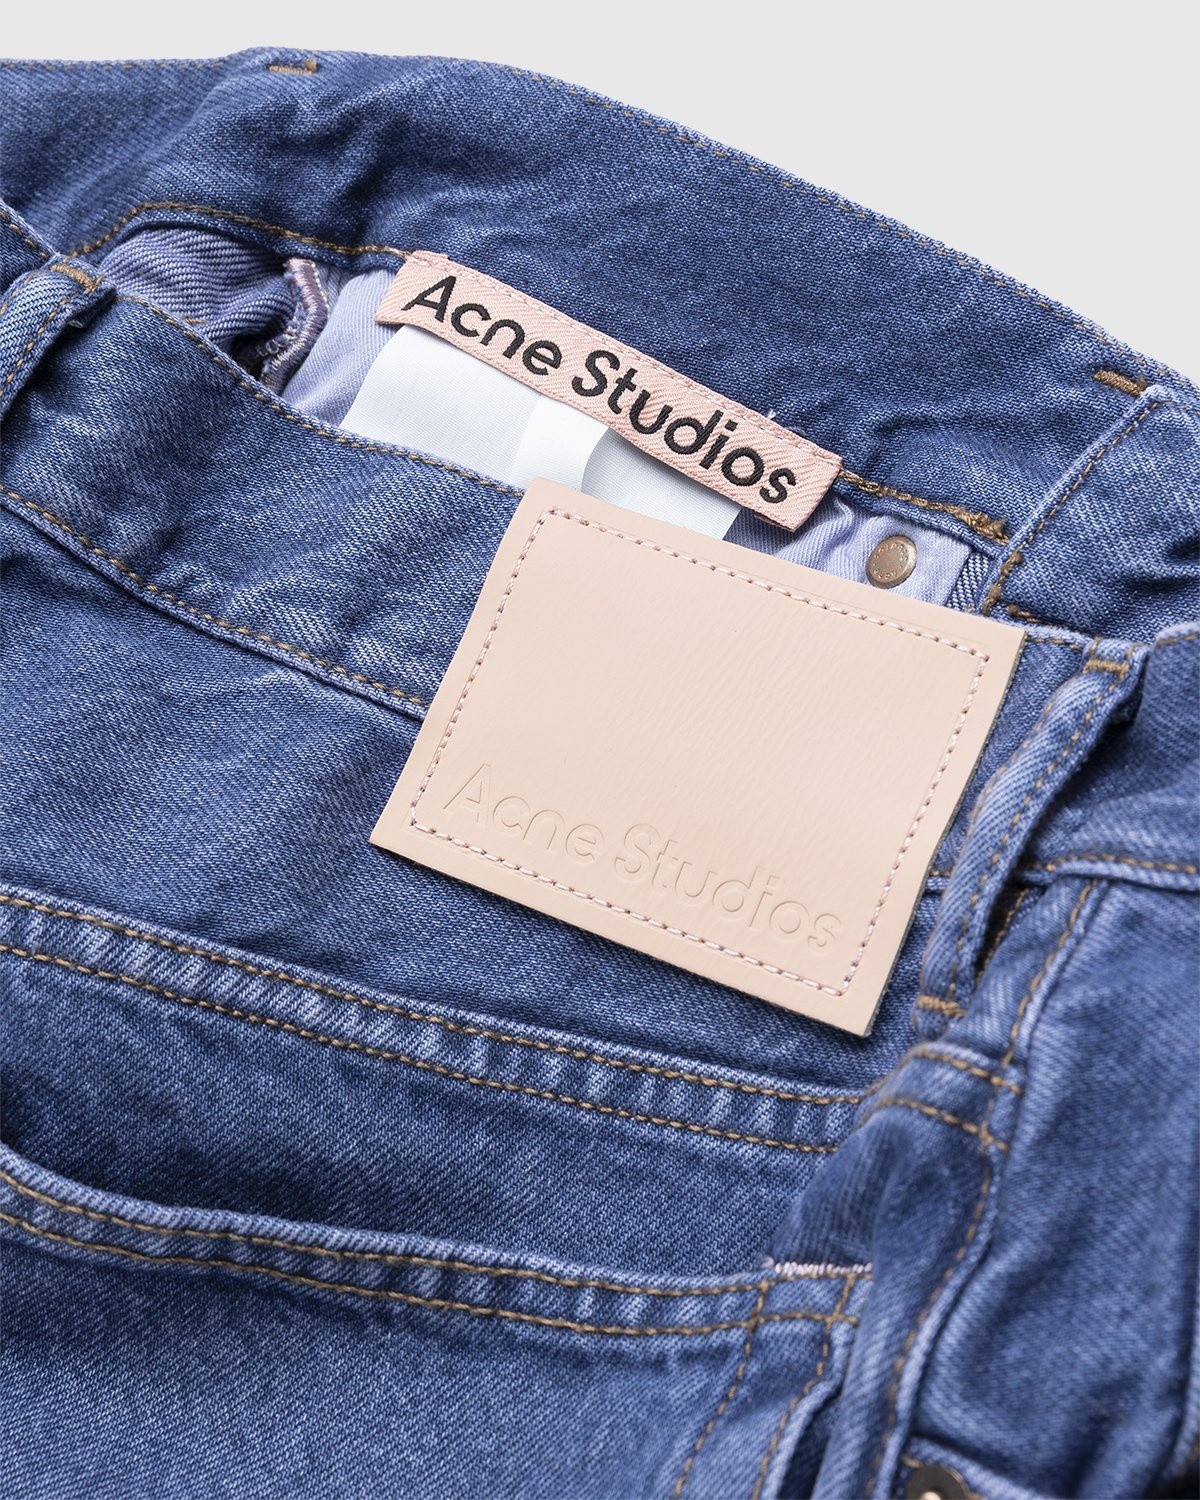 Acne Studios – Brutus 2021M Boot Cut Jeans Blue - Denim - Blue - Image 5